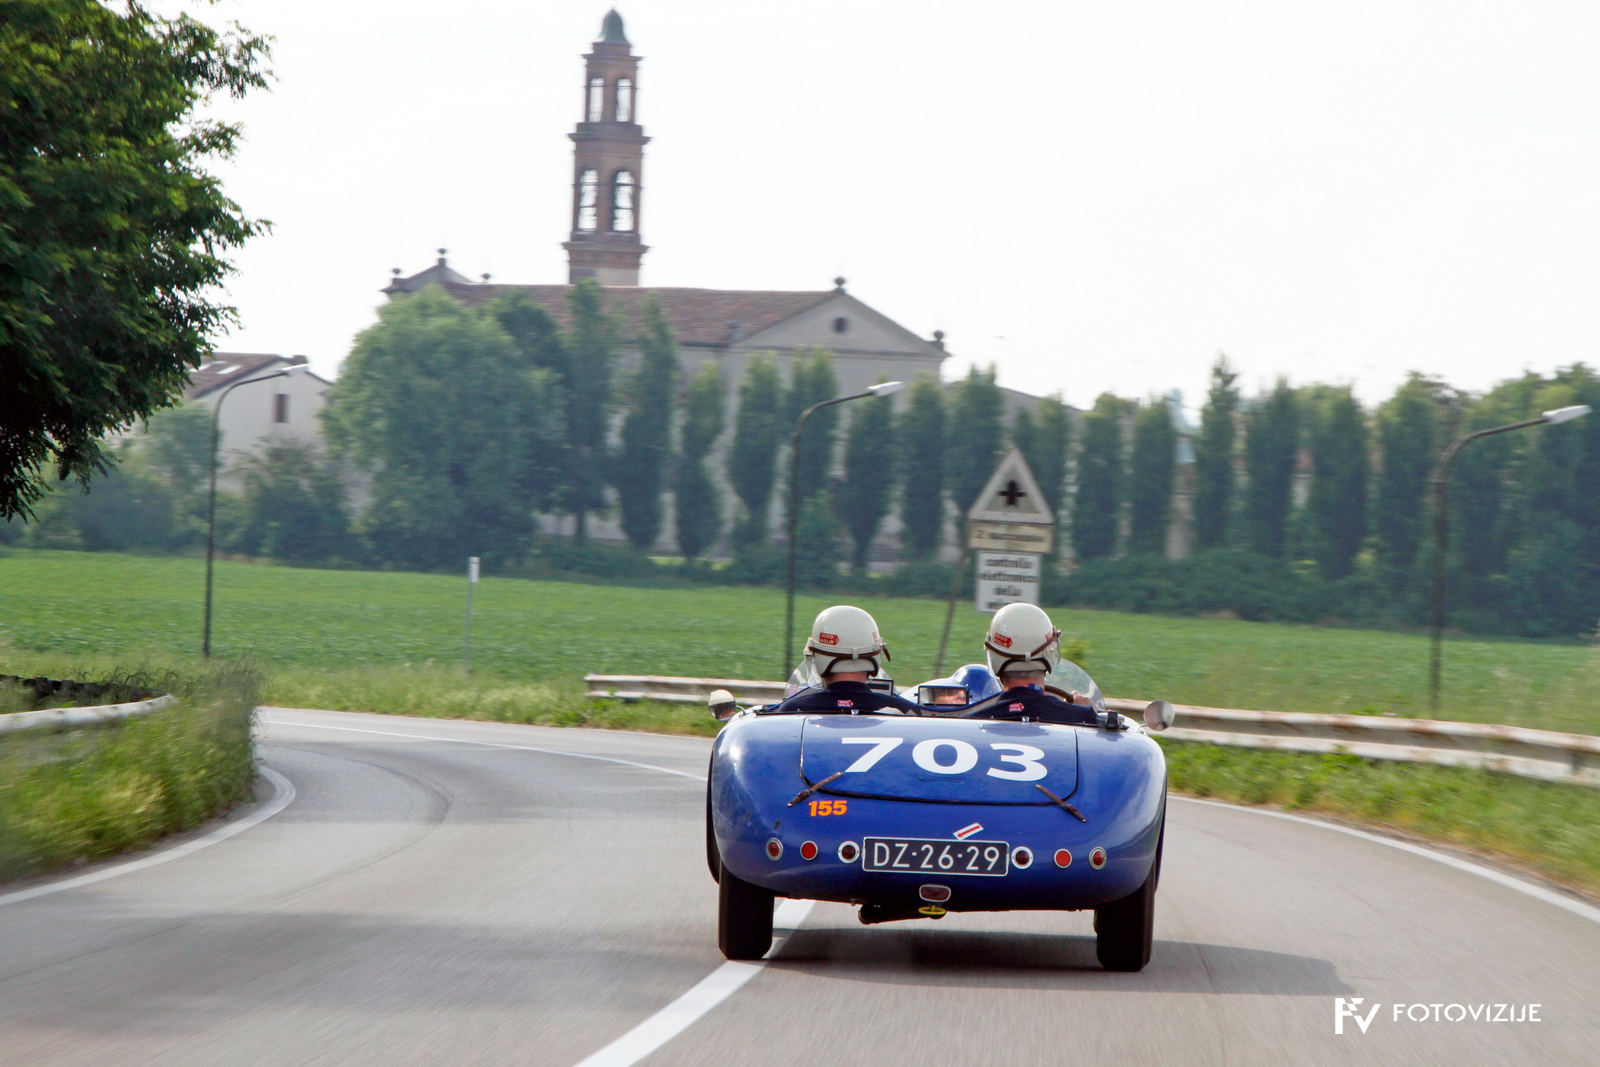 Tipičen pogled z dirke - prepoznavno italijanska krajina starodobnik in nič kaj počasna vožnja.